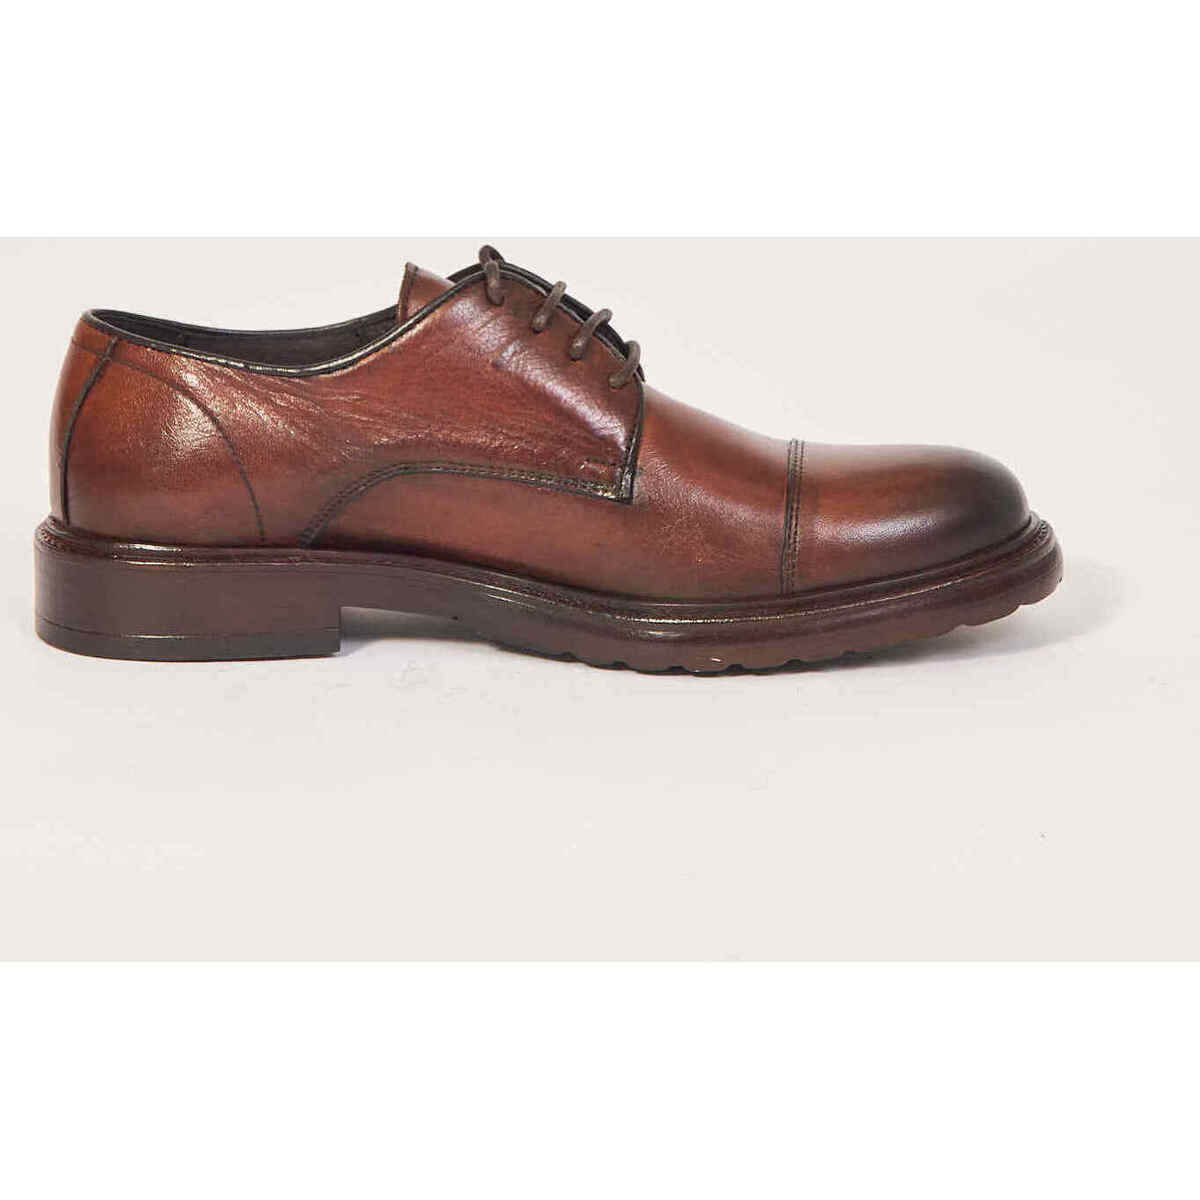 Chaussures Homme Produit vendu et expédié par Richelieus  pour hommes en cuir nappa souple Marron